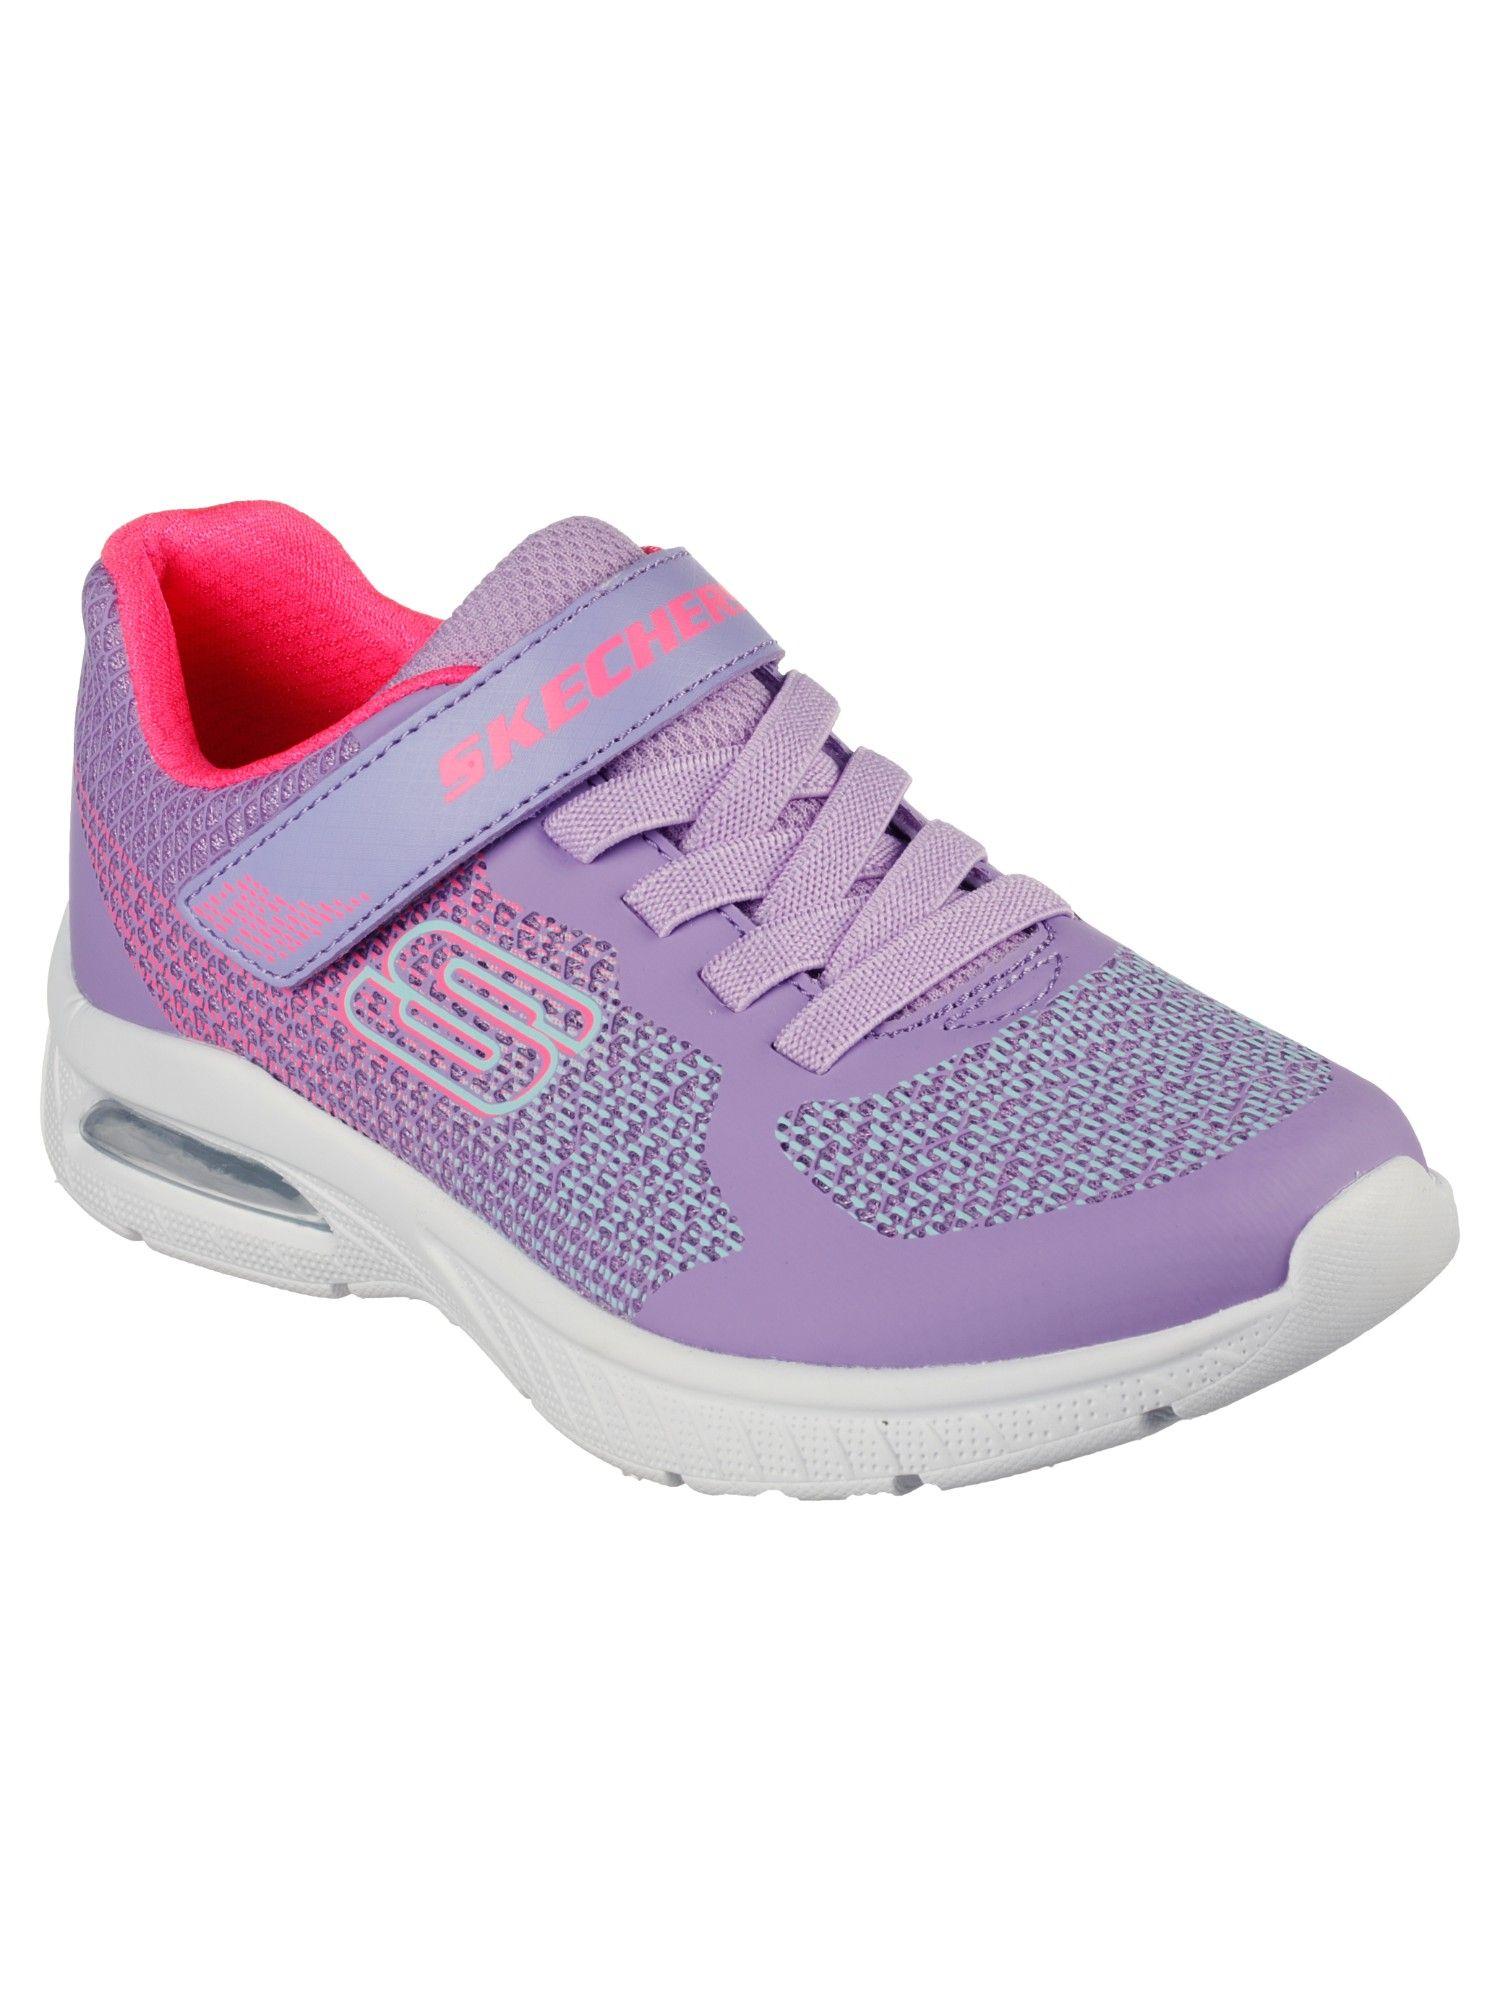 Girls Microspec Max Plus Ombre Da Purple Casual Shoes